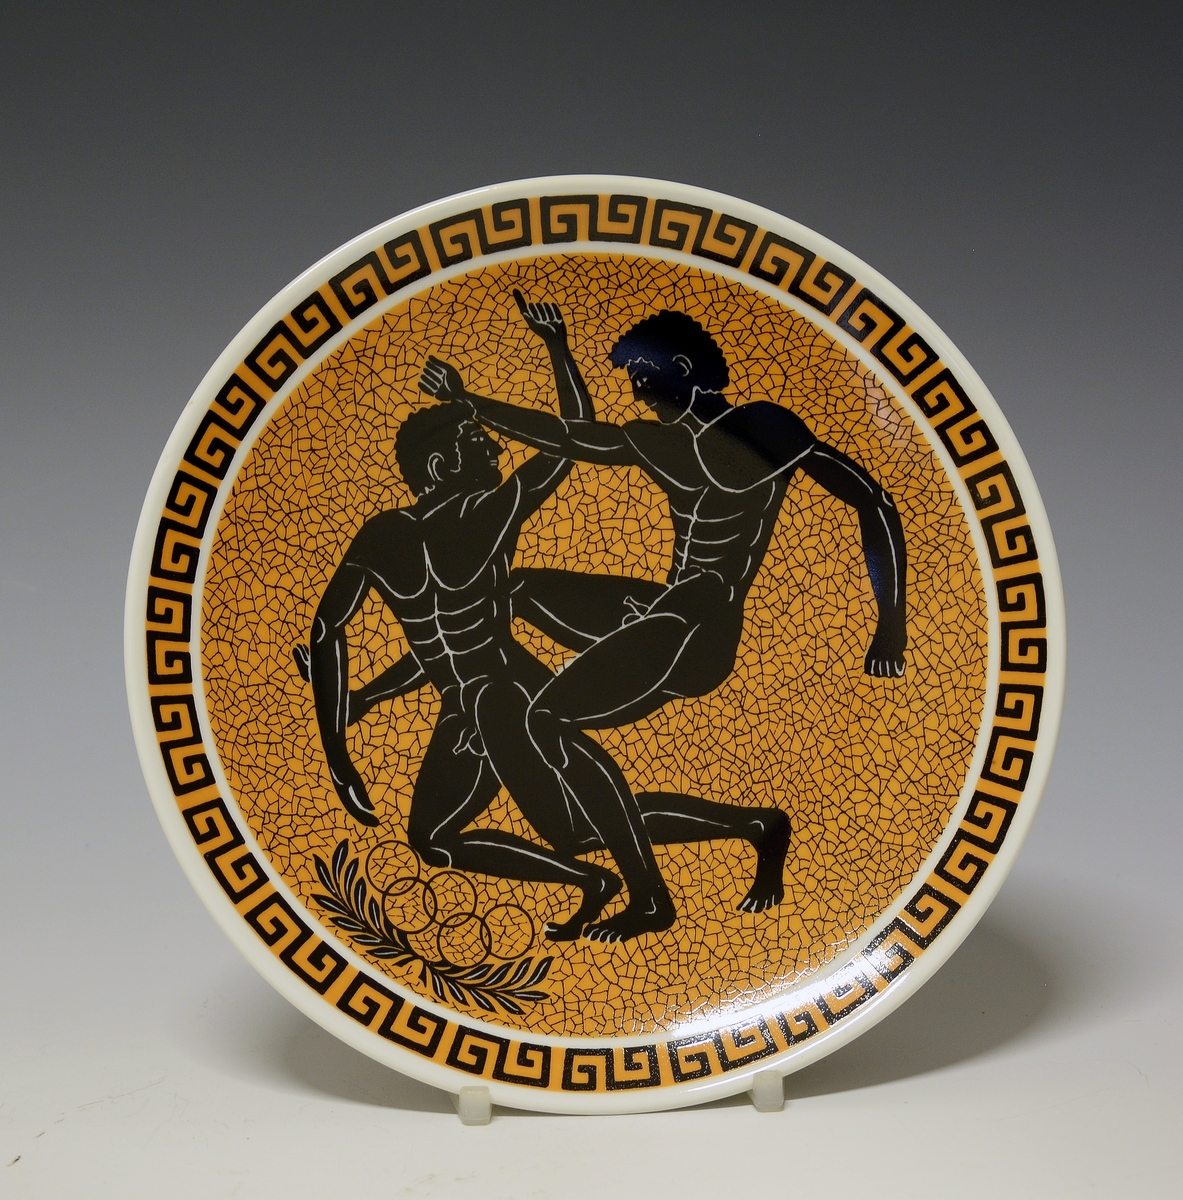 Platte med antikt gresk motiv, to nakne menn i en tvekamp kalt Pancratium. Under mennene de olympiske ringer på laurbær. Rundt fanen meanderbord.